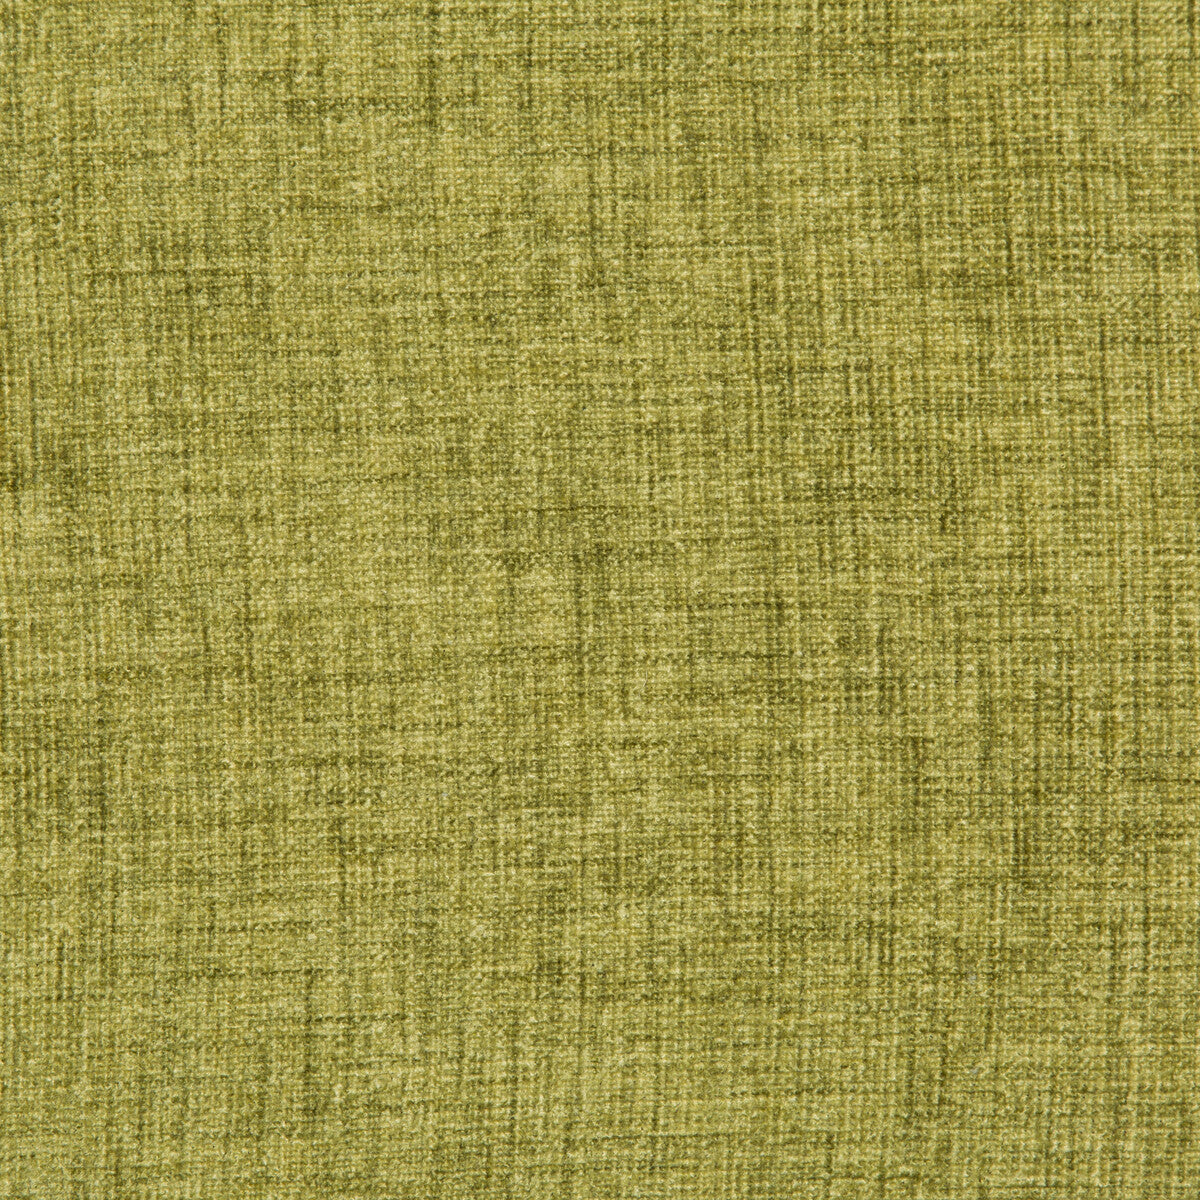 Kravet Basics fabric in 35775-3 color - pattern 35775.3.0 - by Kravet Basics